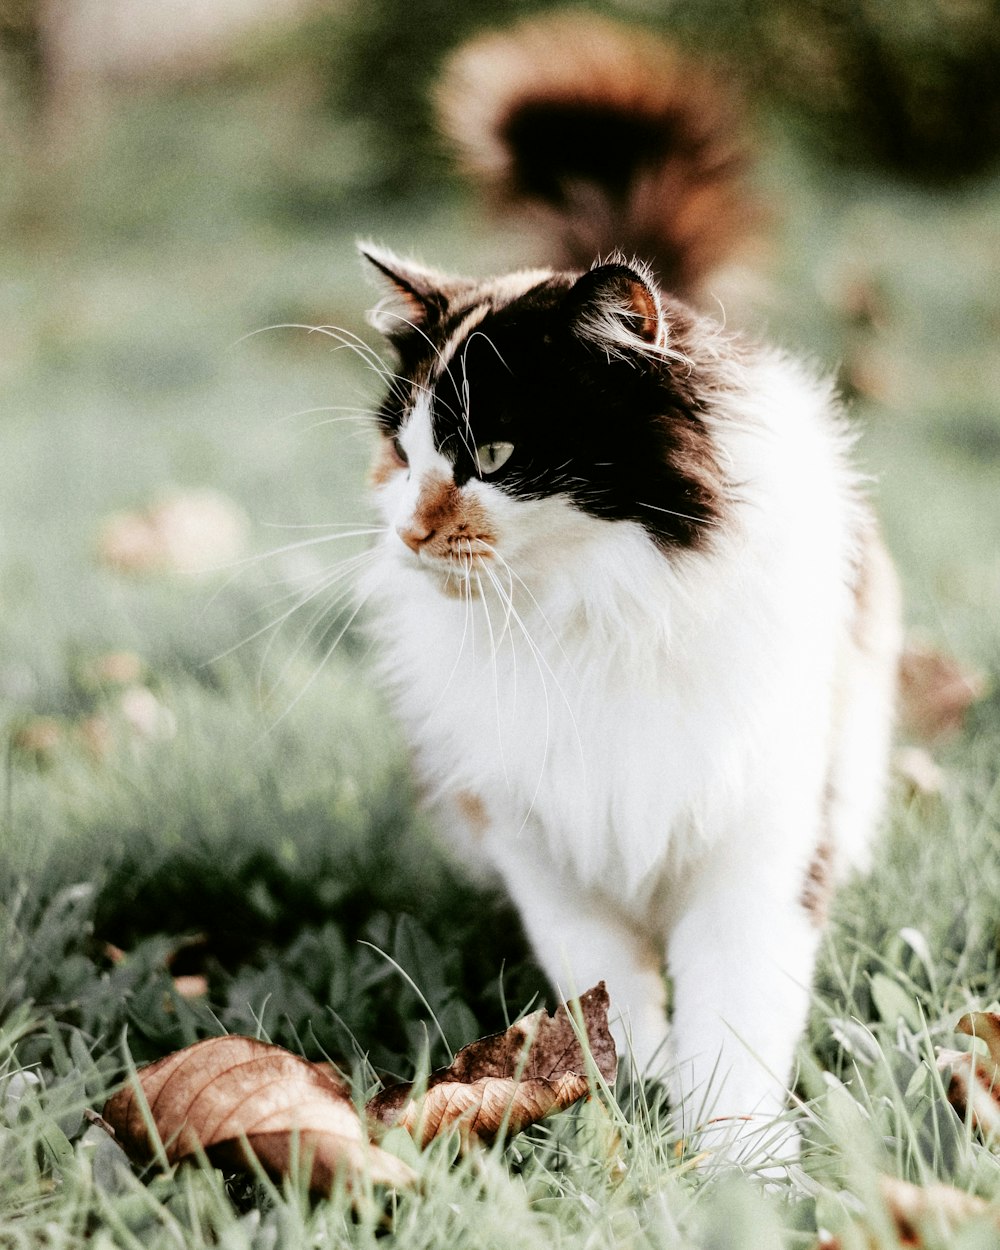 Fotografia de foco raso de gato branco e preto